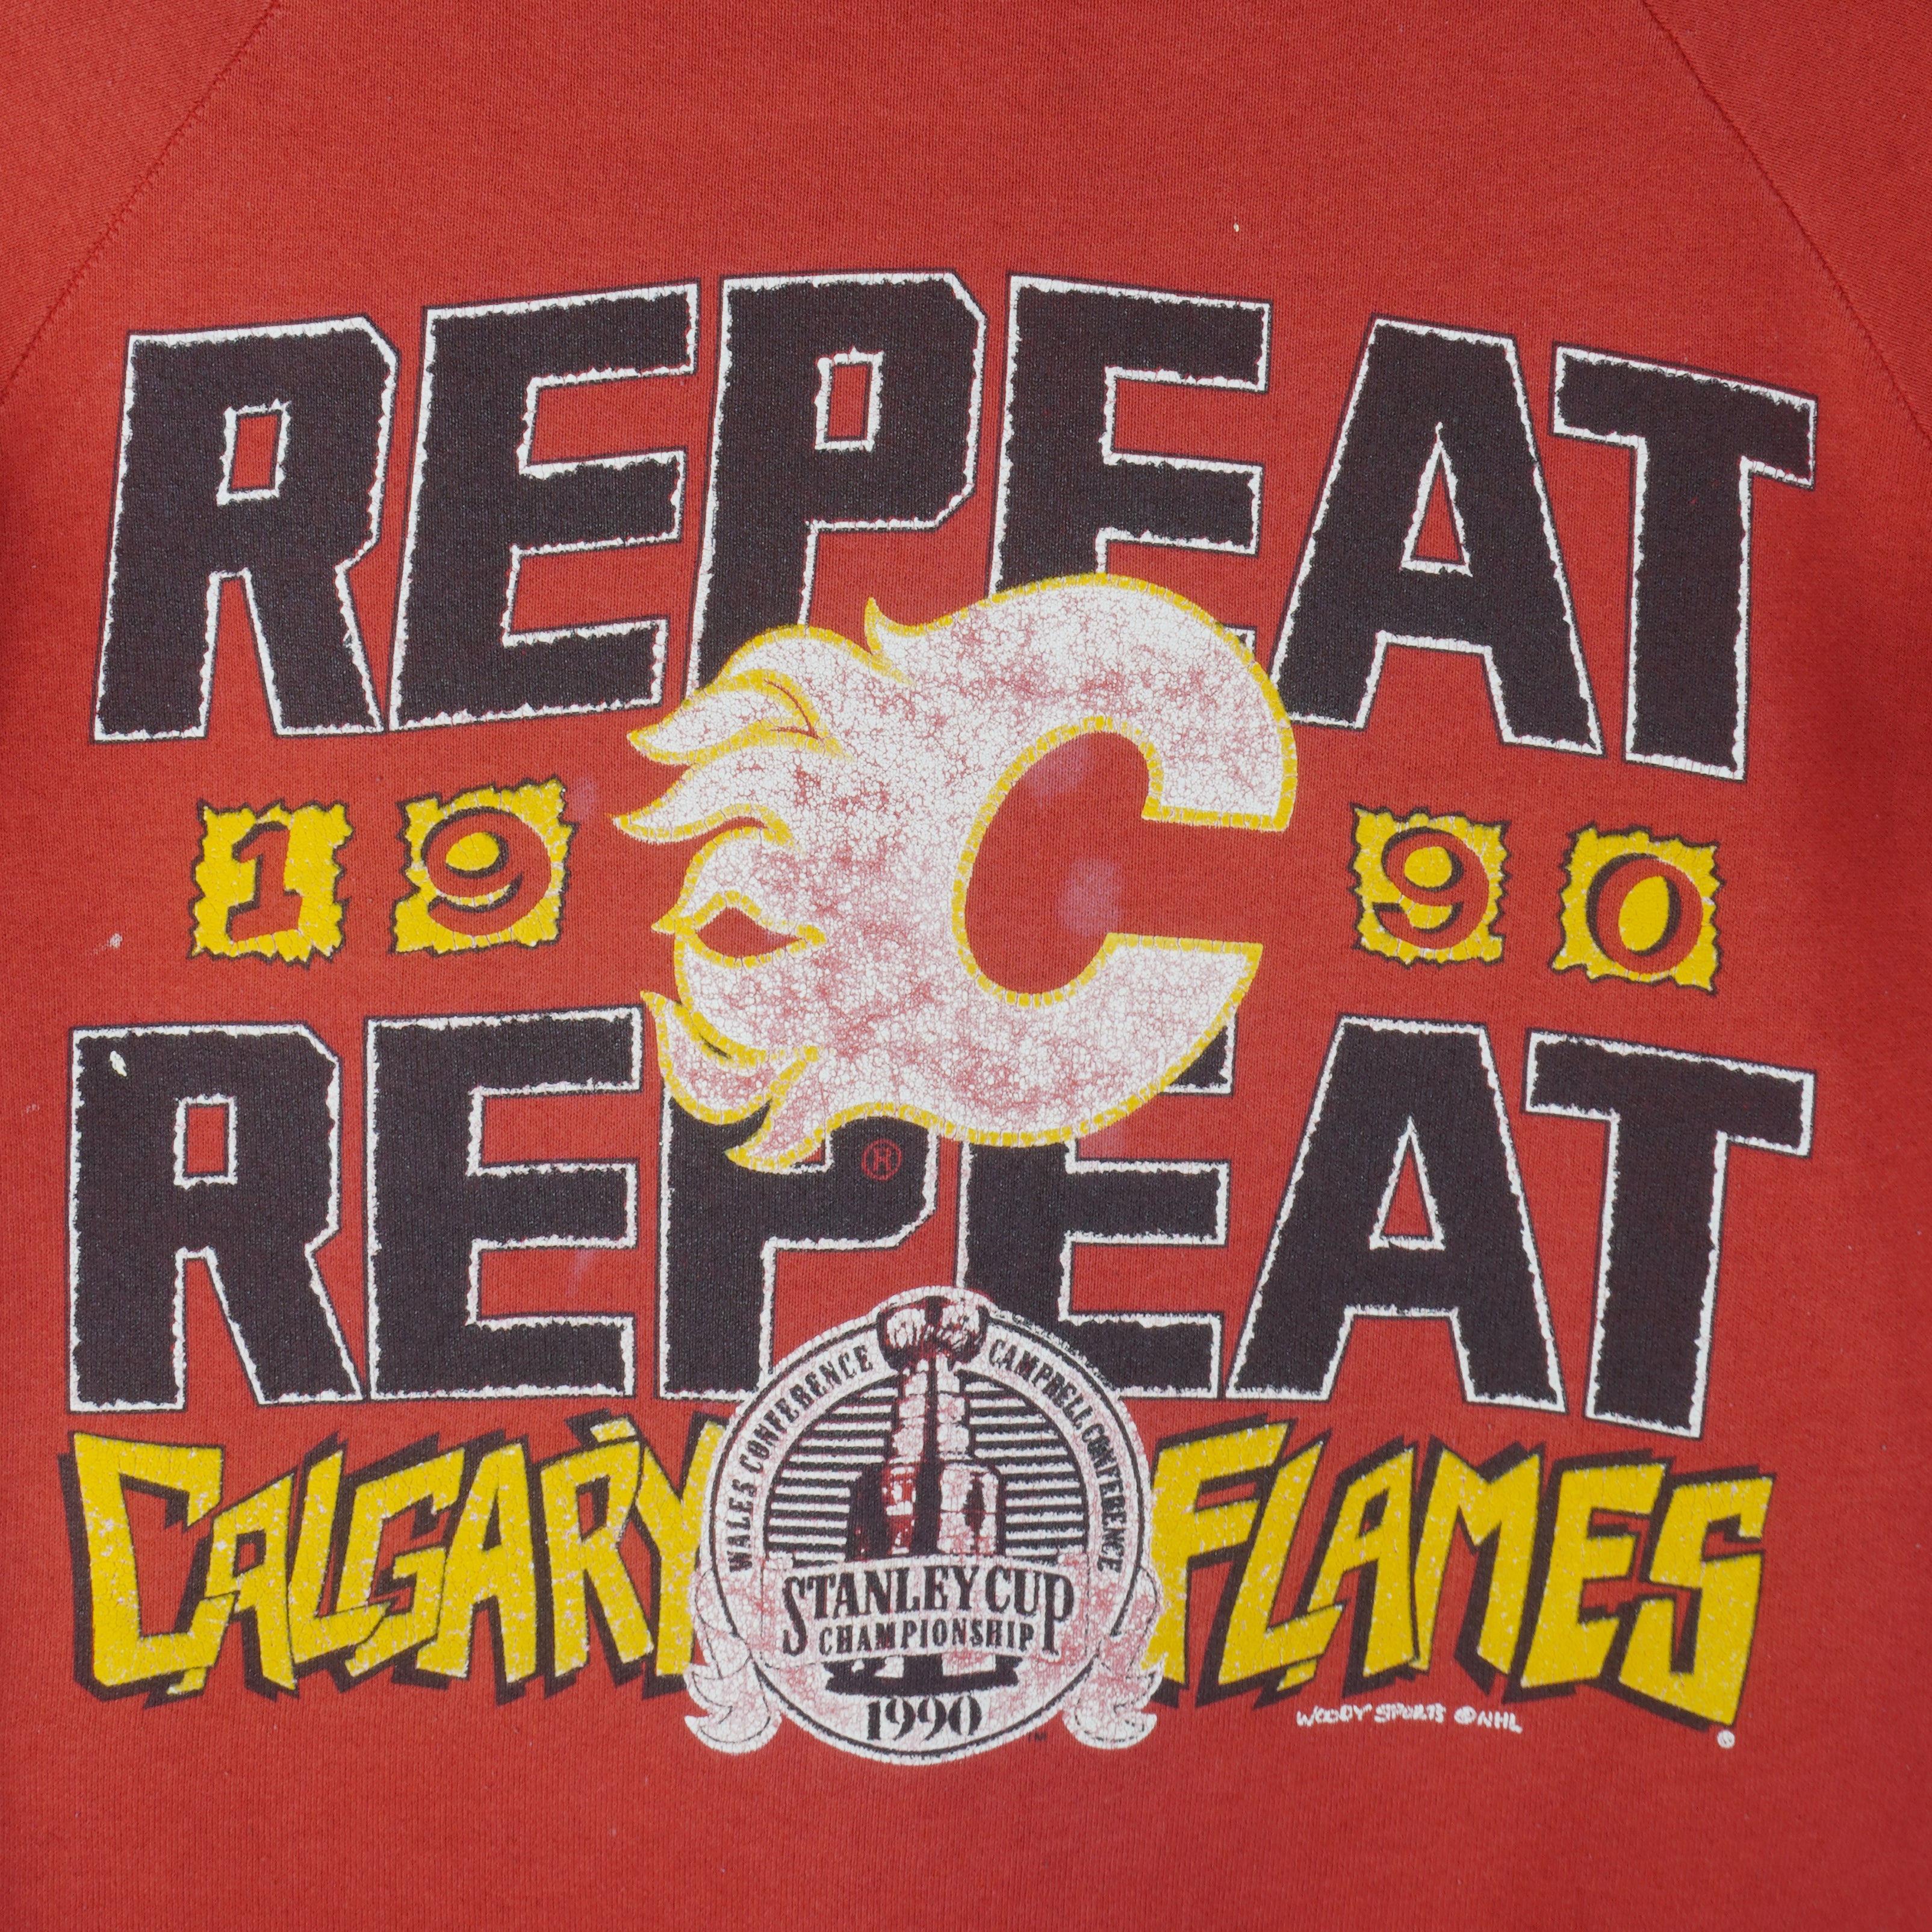 Cheap Calgary Flames Apparel, Discount Flames Gear, NHL Flames